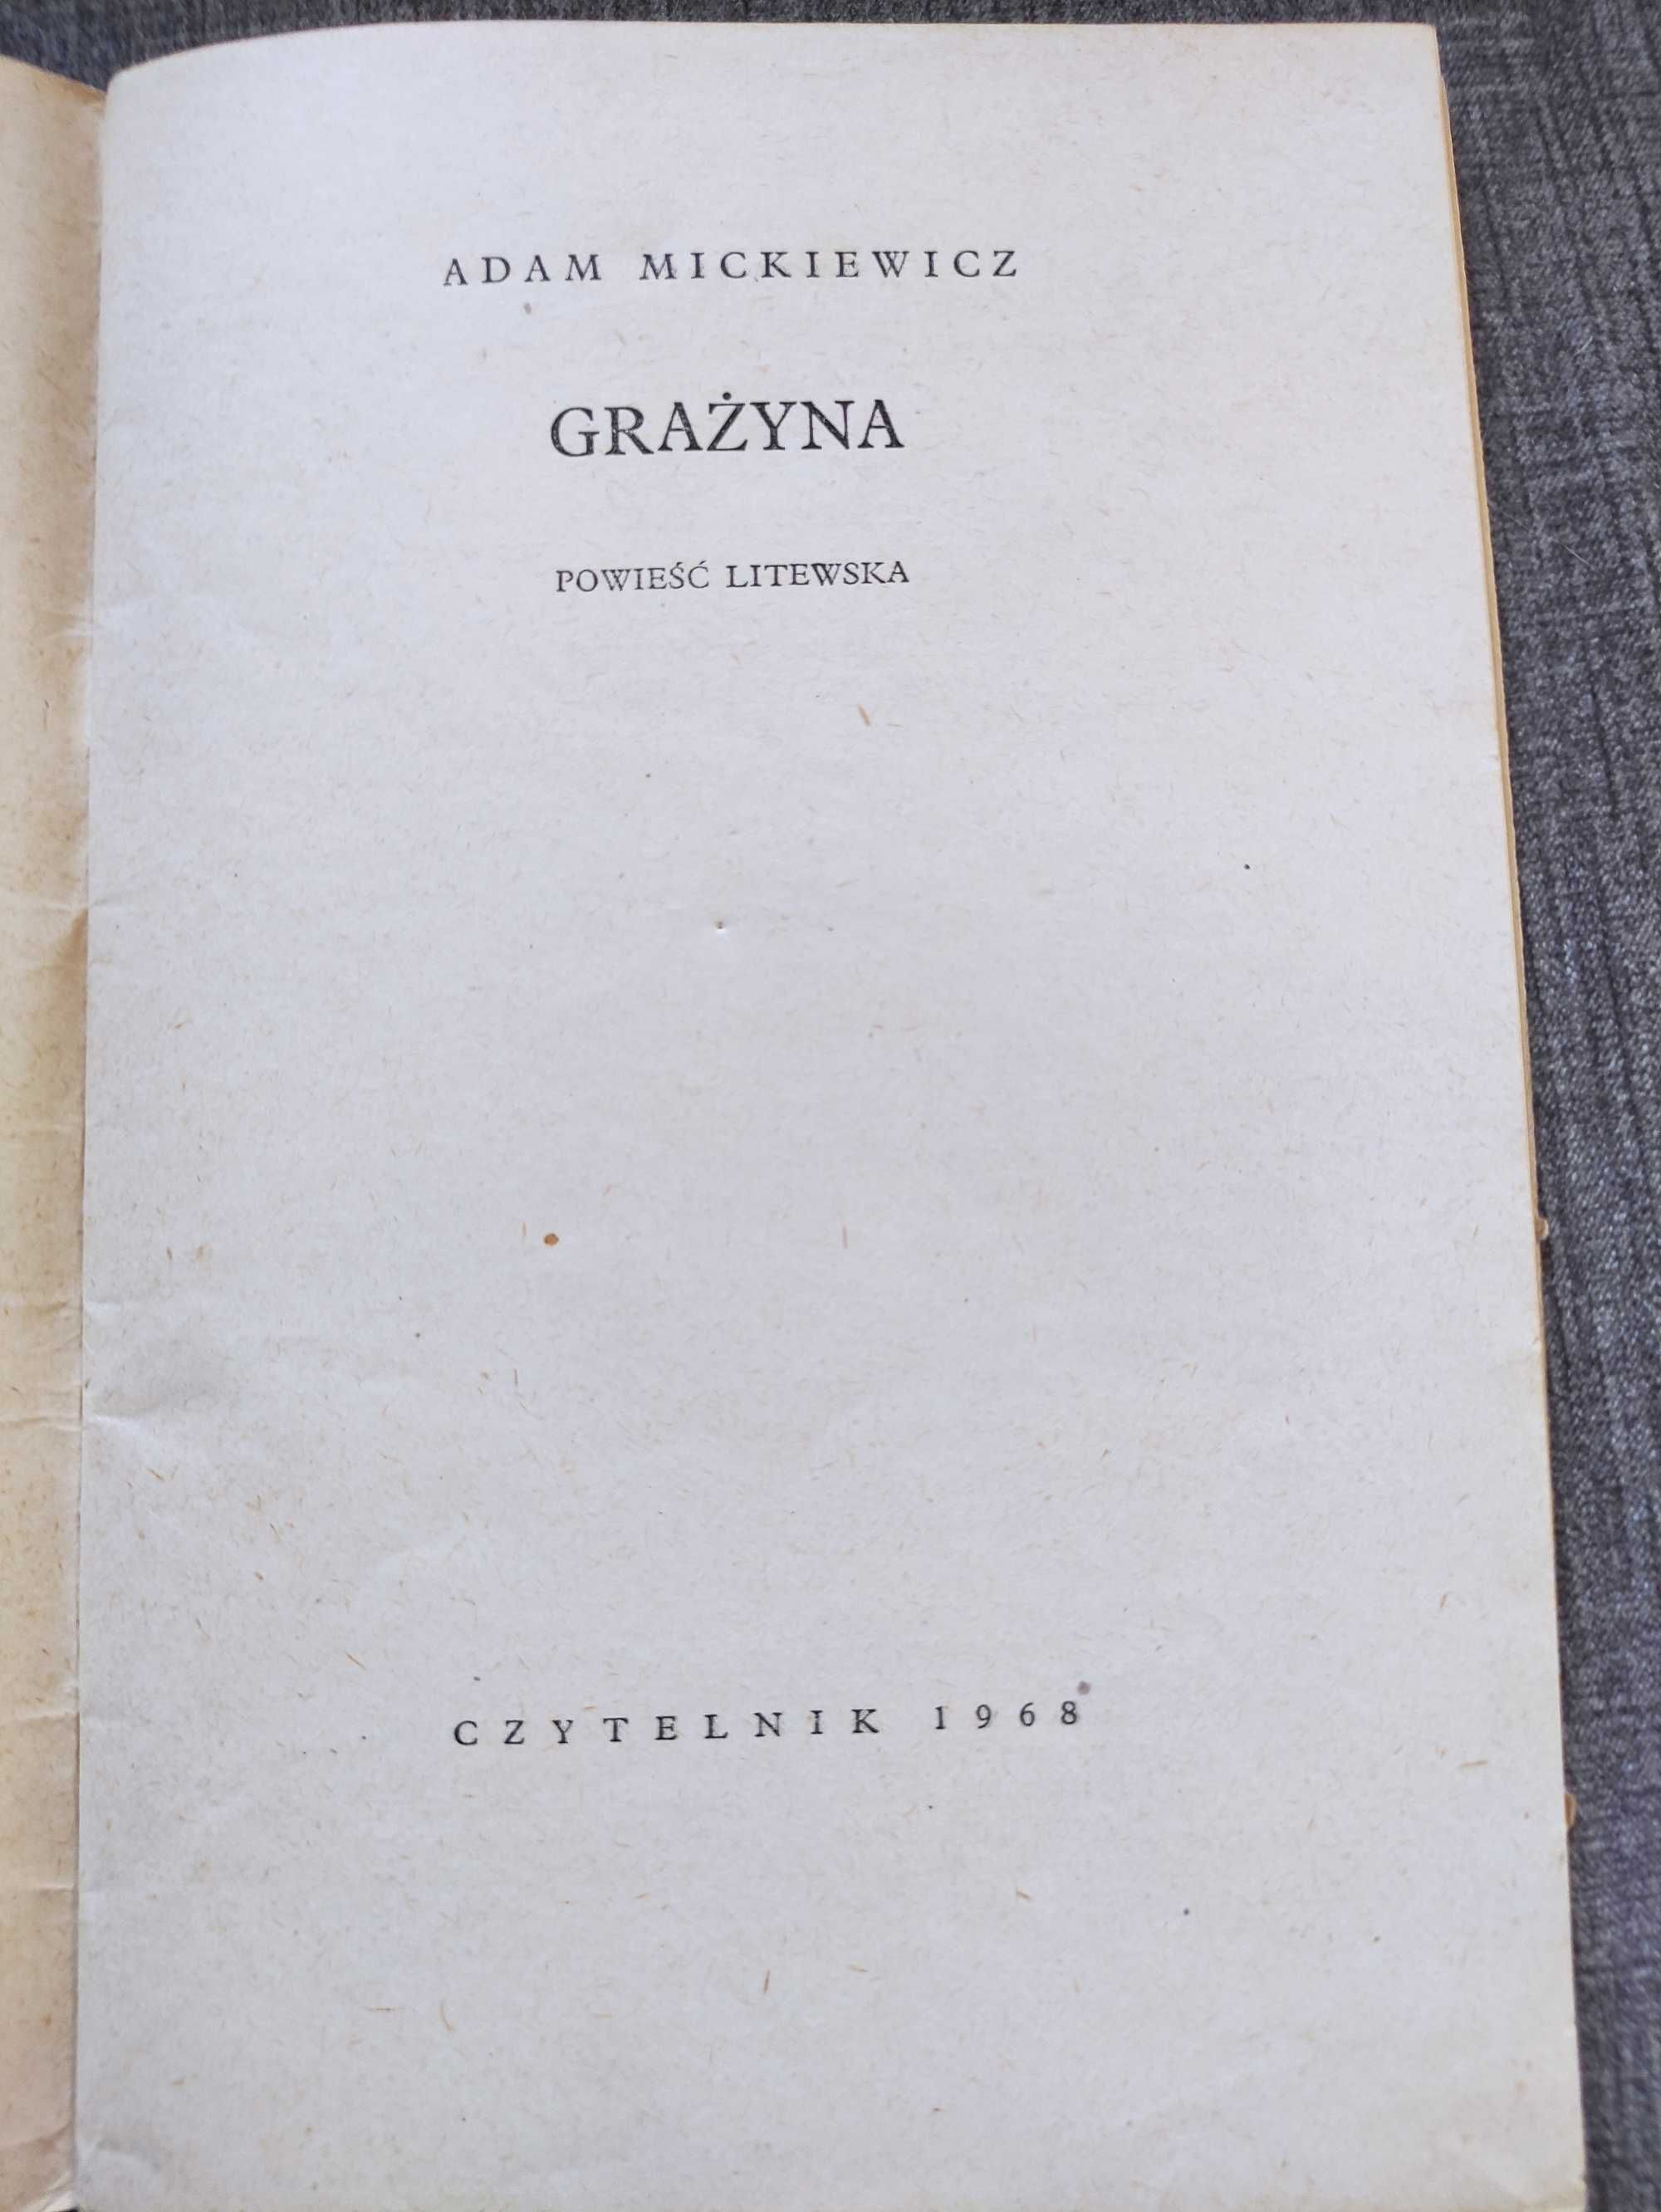 Książka "Grażyna" Adam Mickiewicz Wydanie Czytelnik 1968